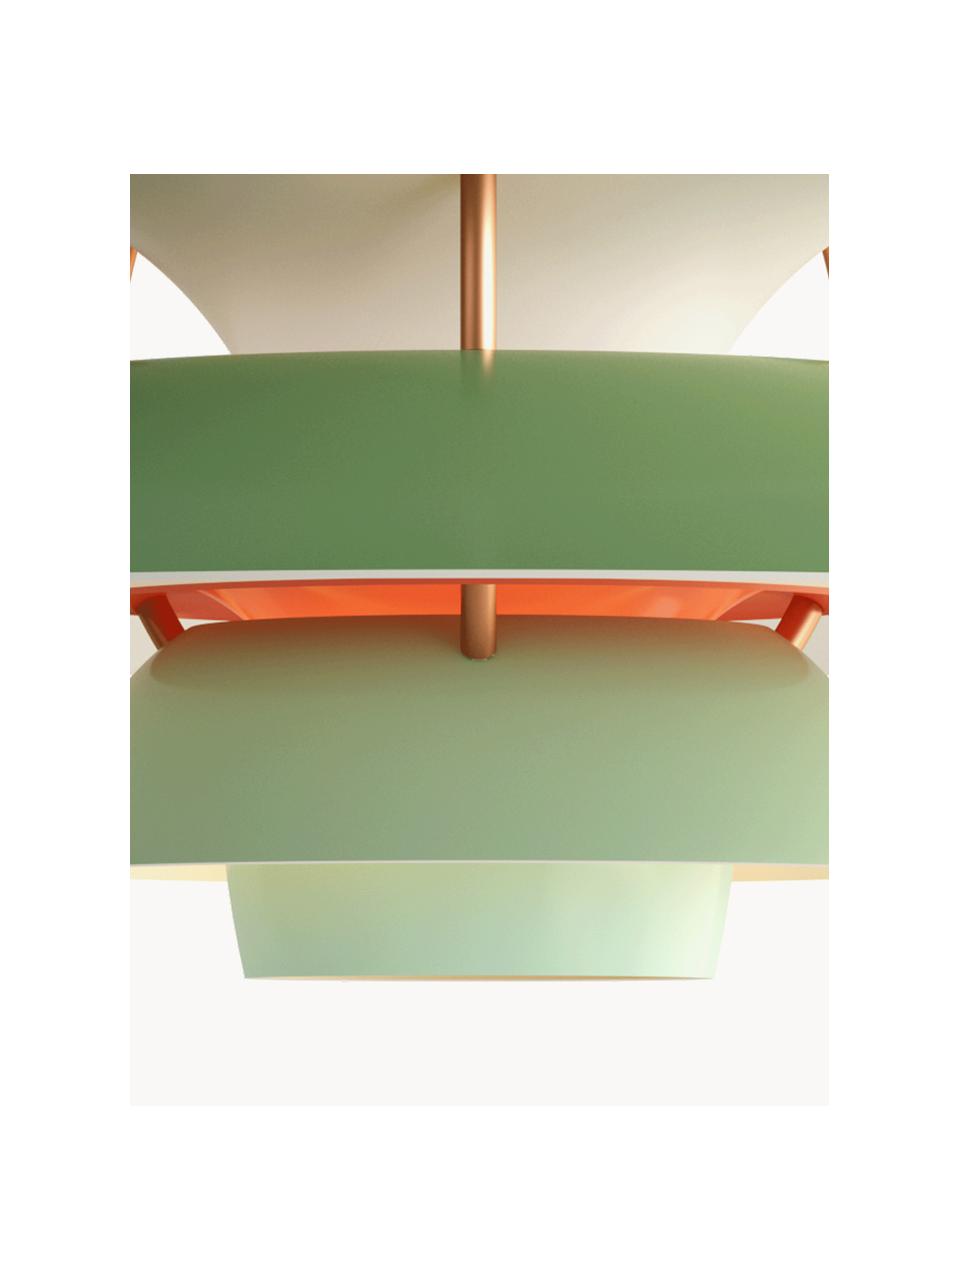 Lampa wisząca PH 5, różne rozmiary, Odcienie zielonego, odcienie złotego, Ø 30 x 16 cm